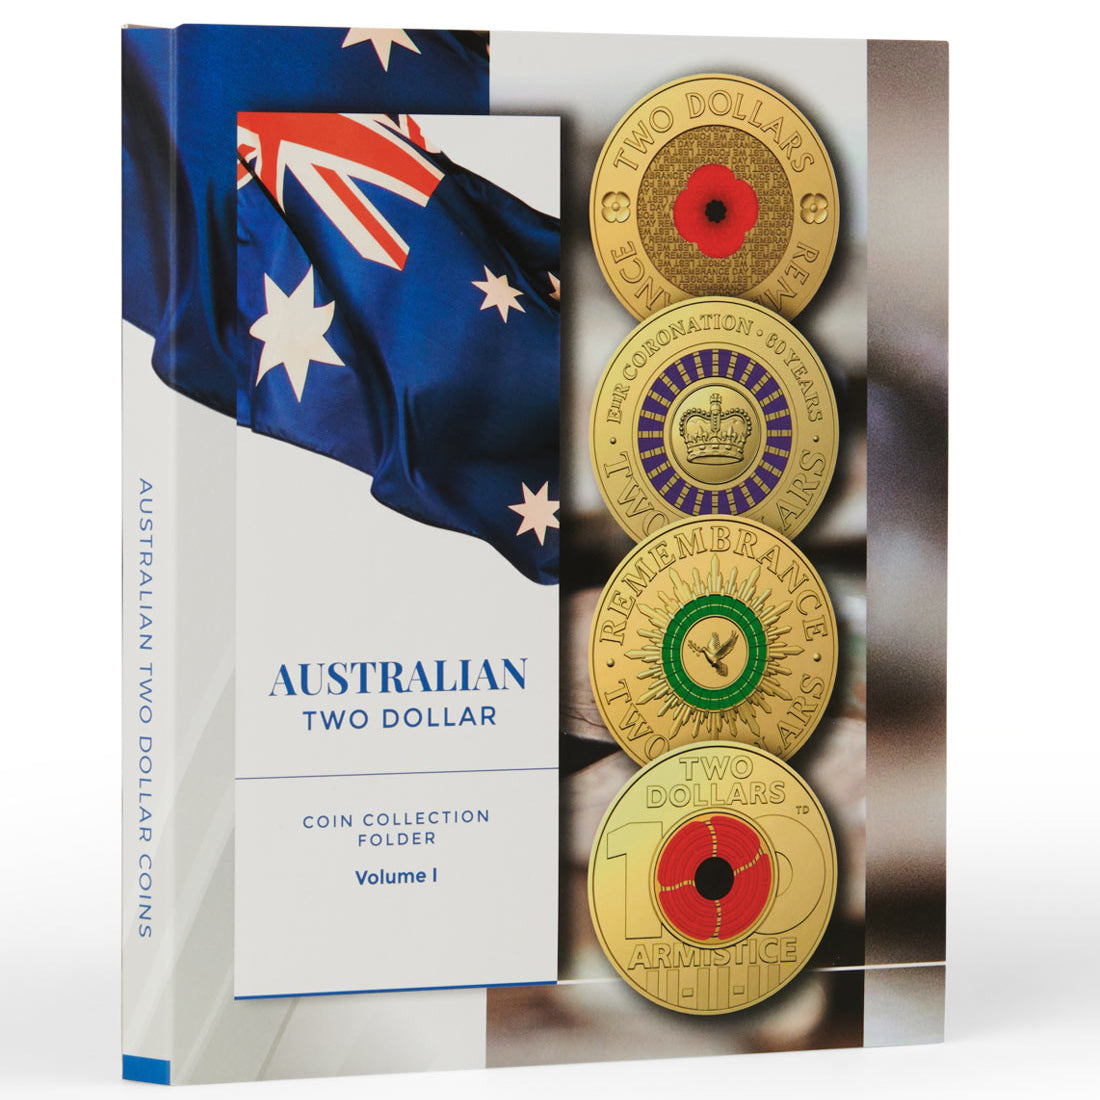 Australian $2 Coin Collection Folder